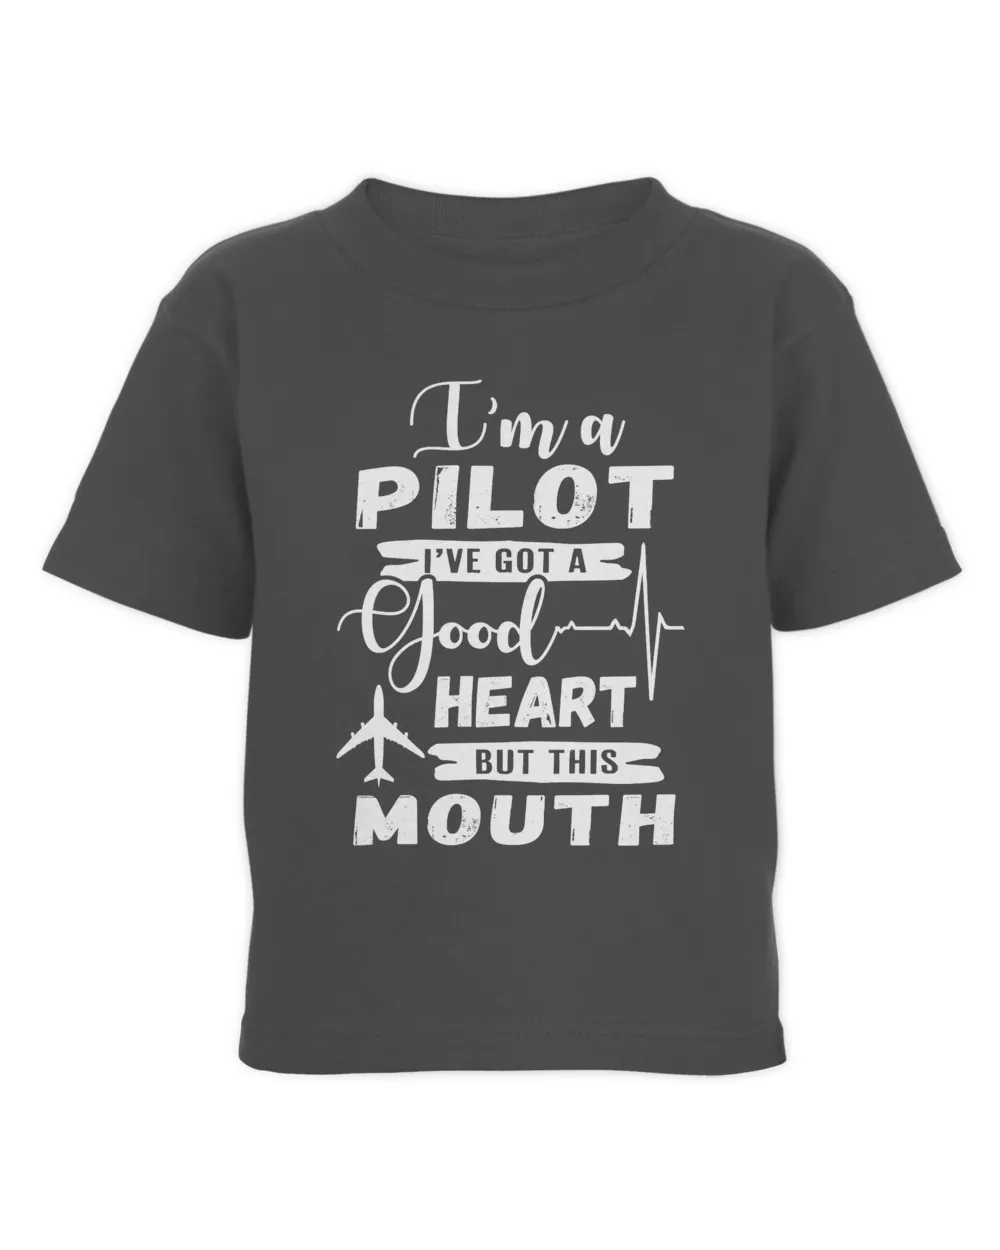 I'm a pilot I've got a good heart but this mouth